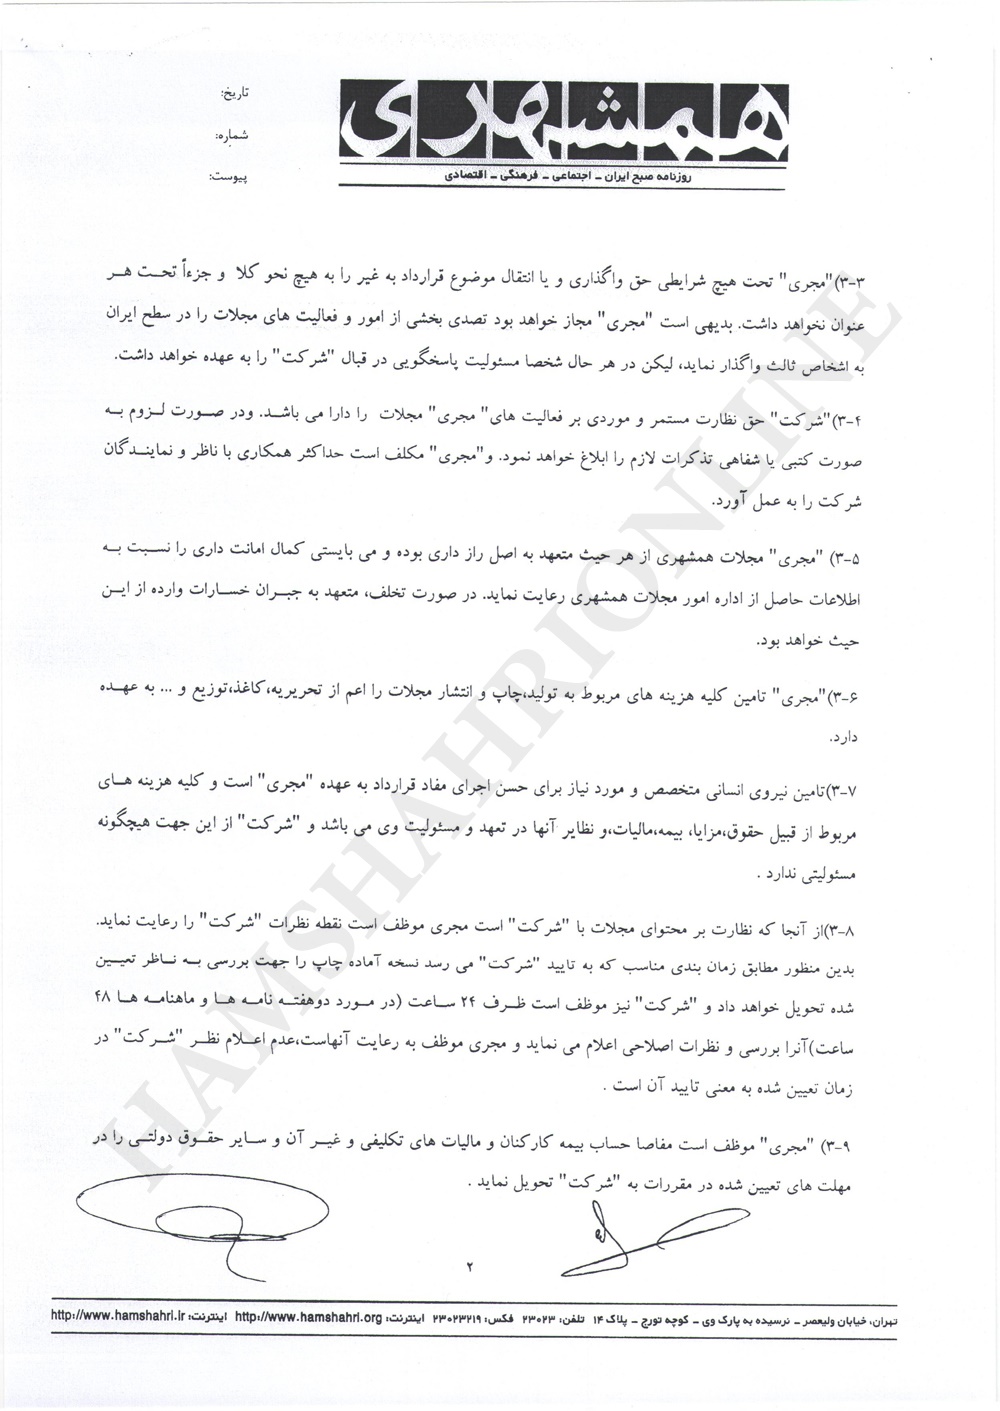 متن کامل قرارداد واگذاری تولید و انتشار مجلات همشهری 